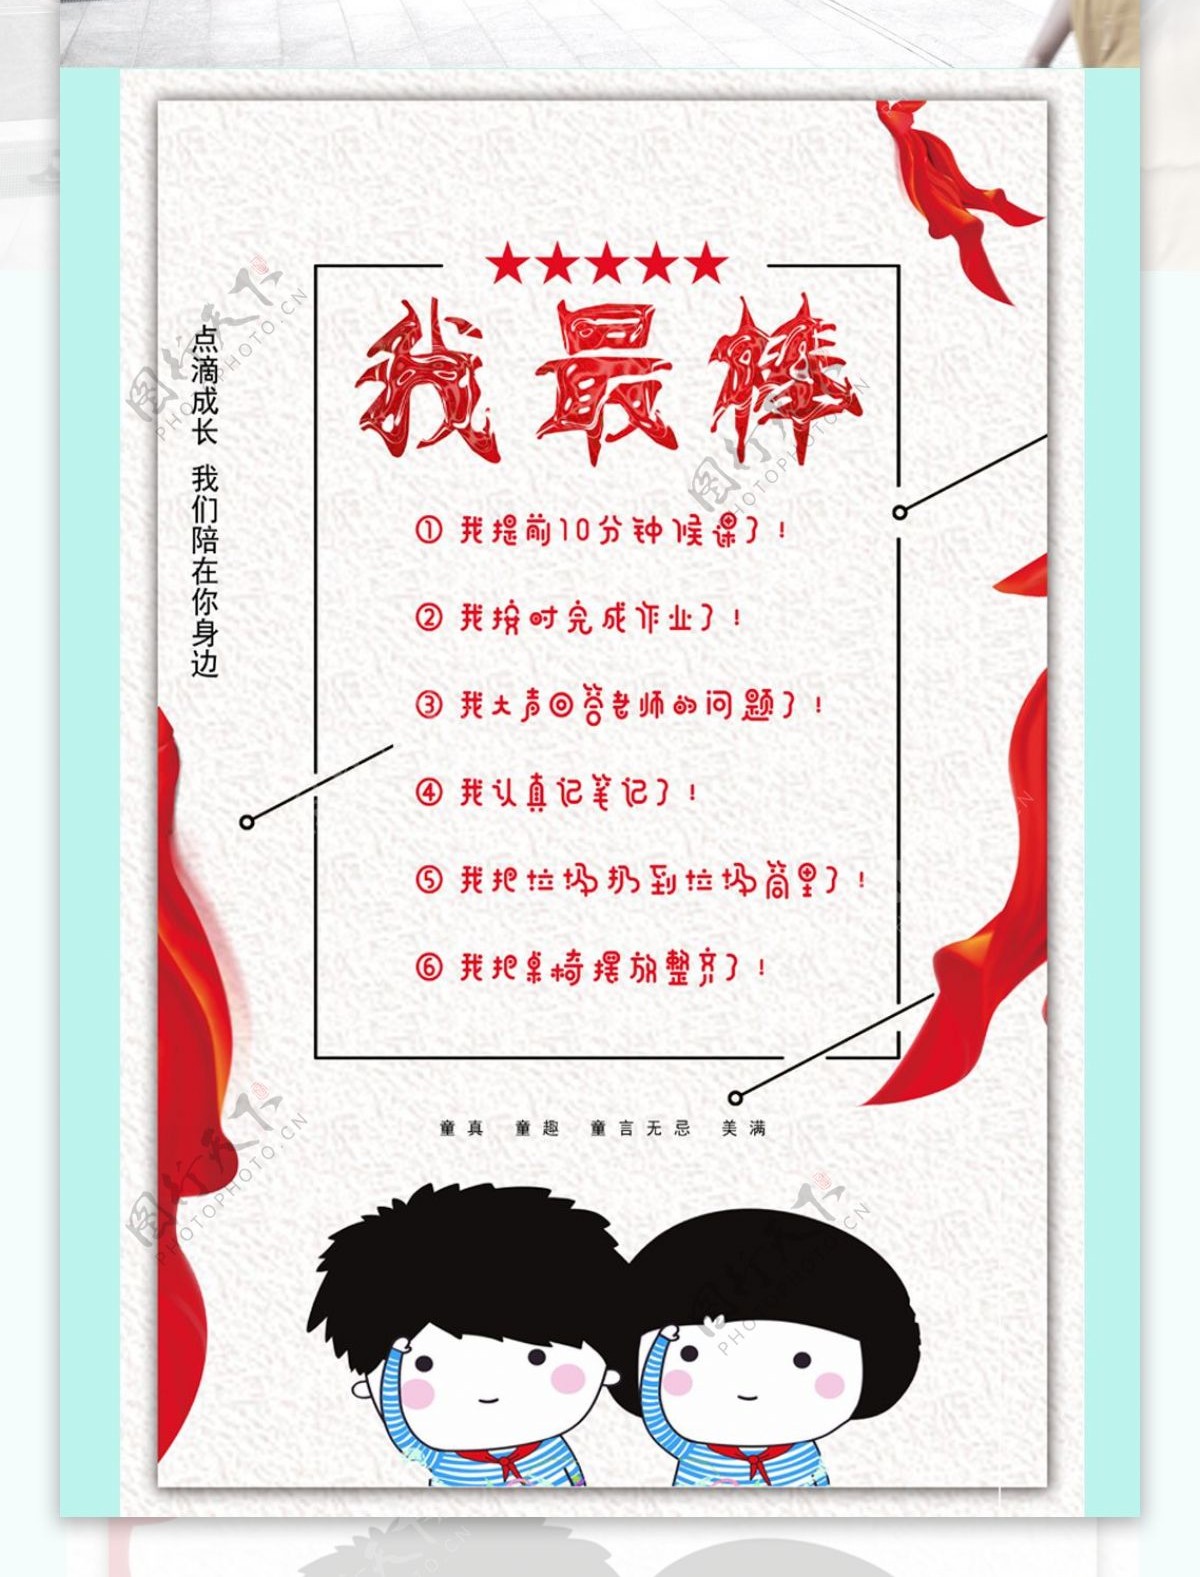 红领巾喜庆卡通教育宣传喷绘海报设计模板